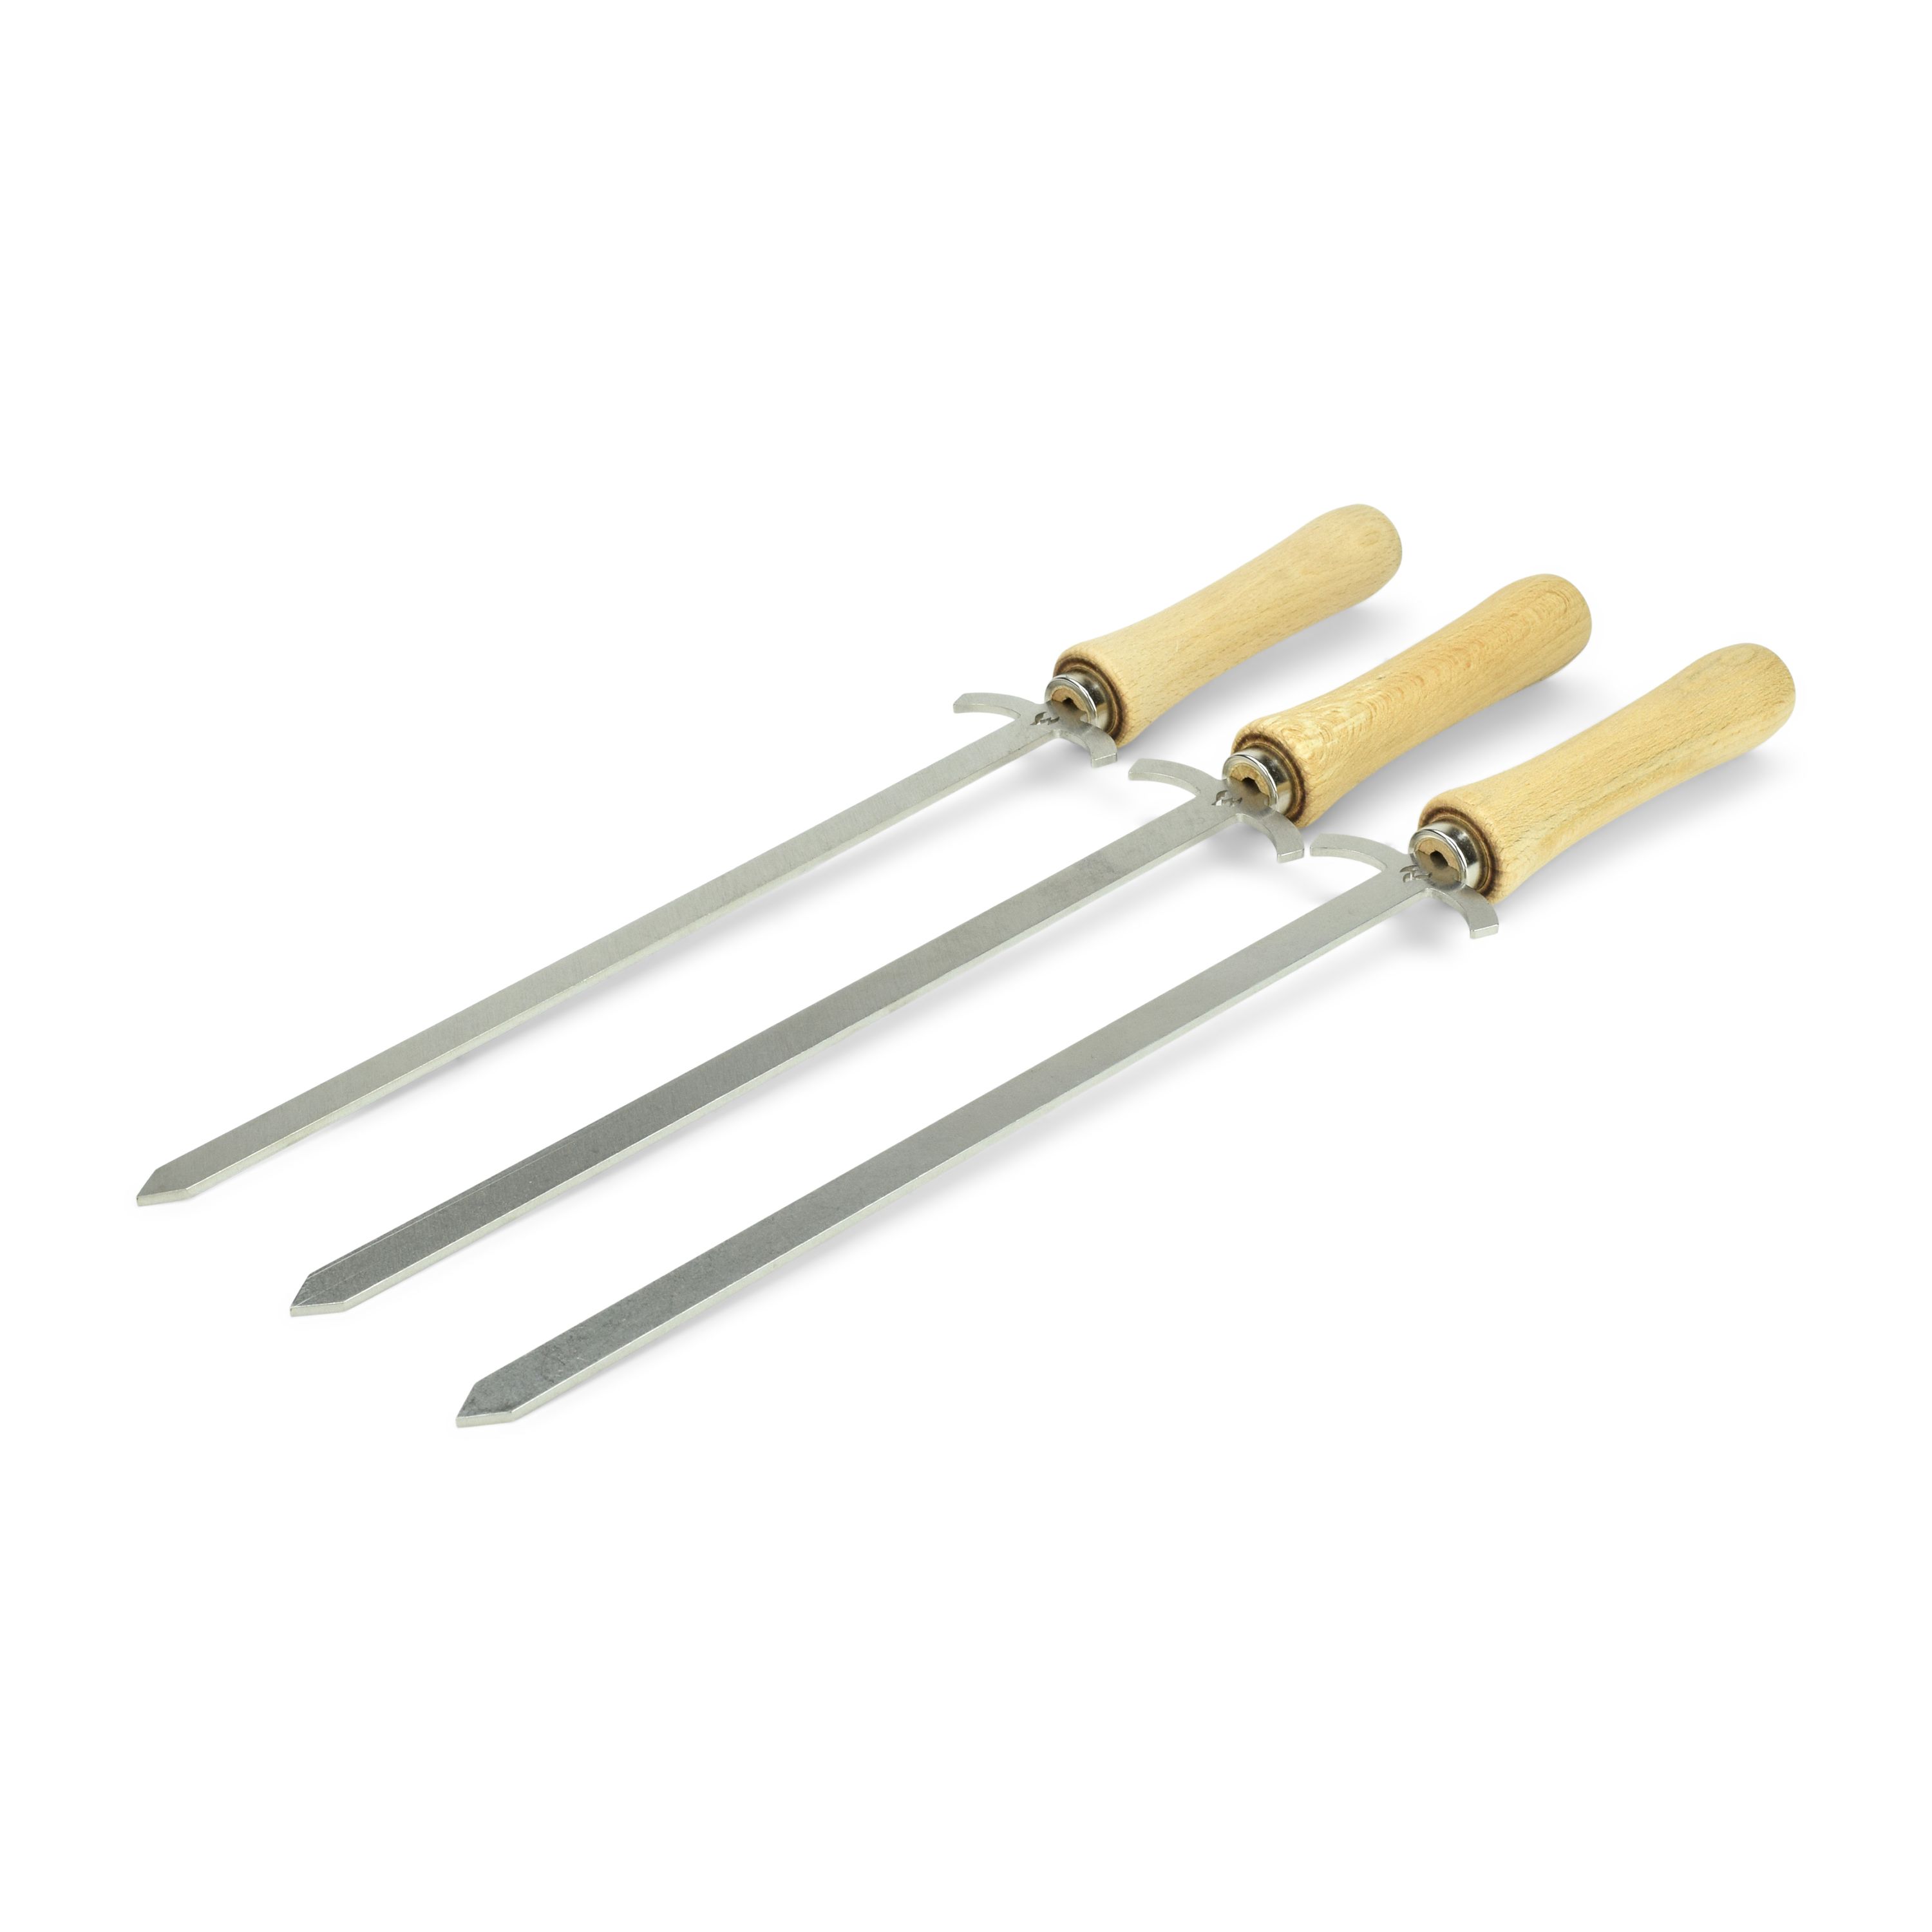 3 épées de barbecue en acier inoxydable la brochette à barbecue un peu différente - 44 cm de long